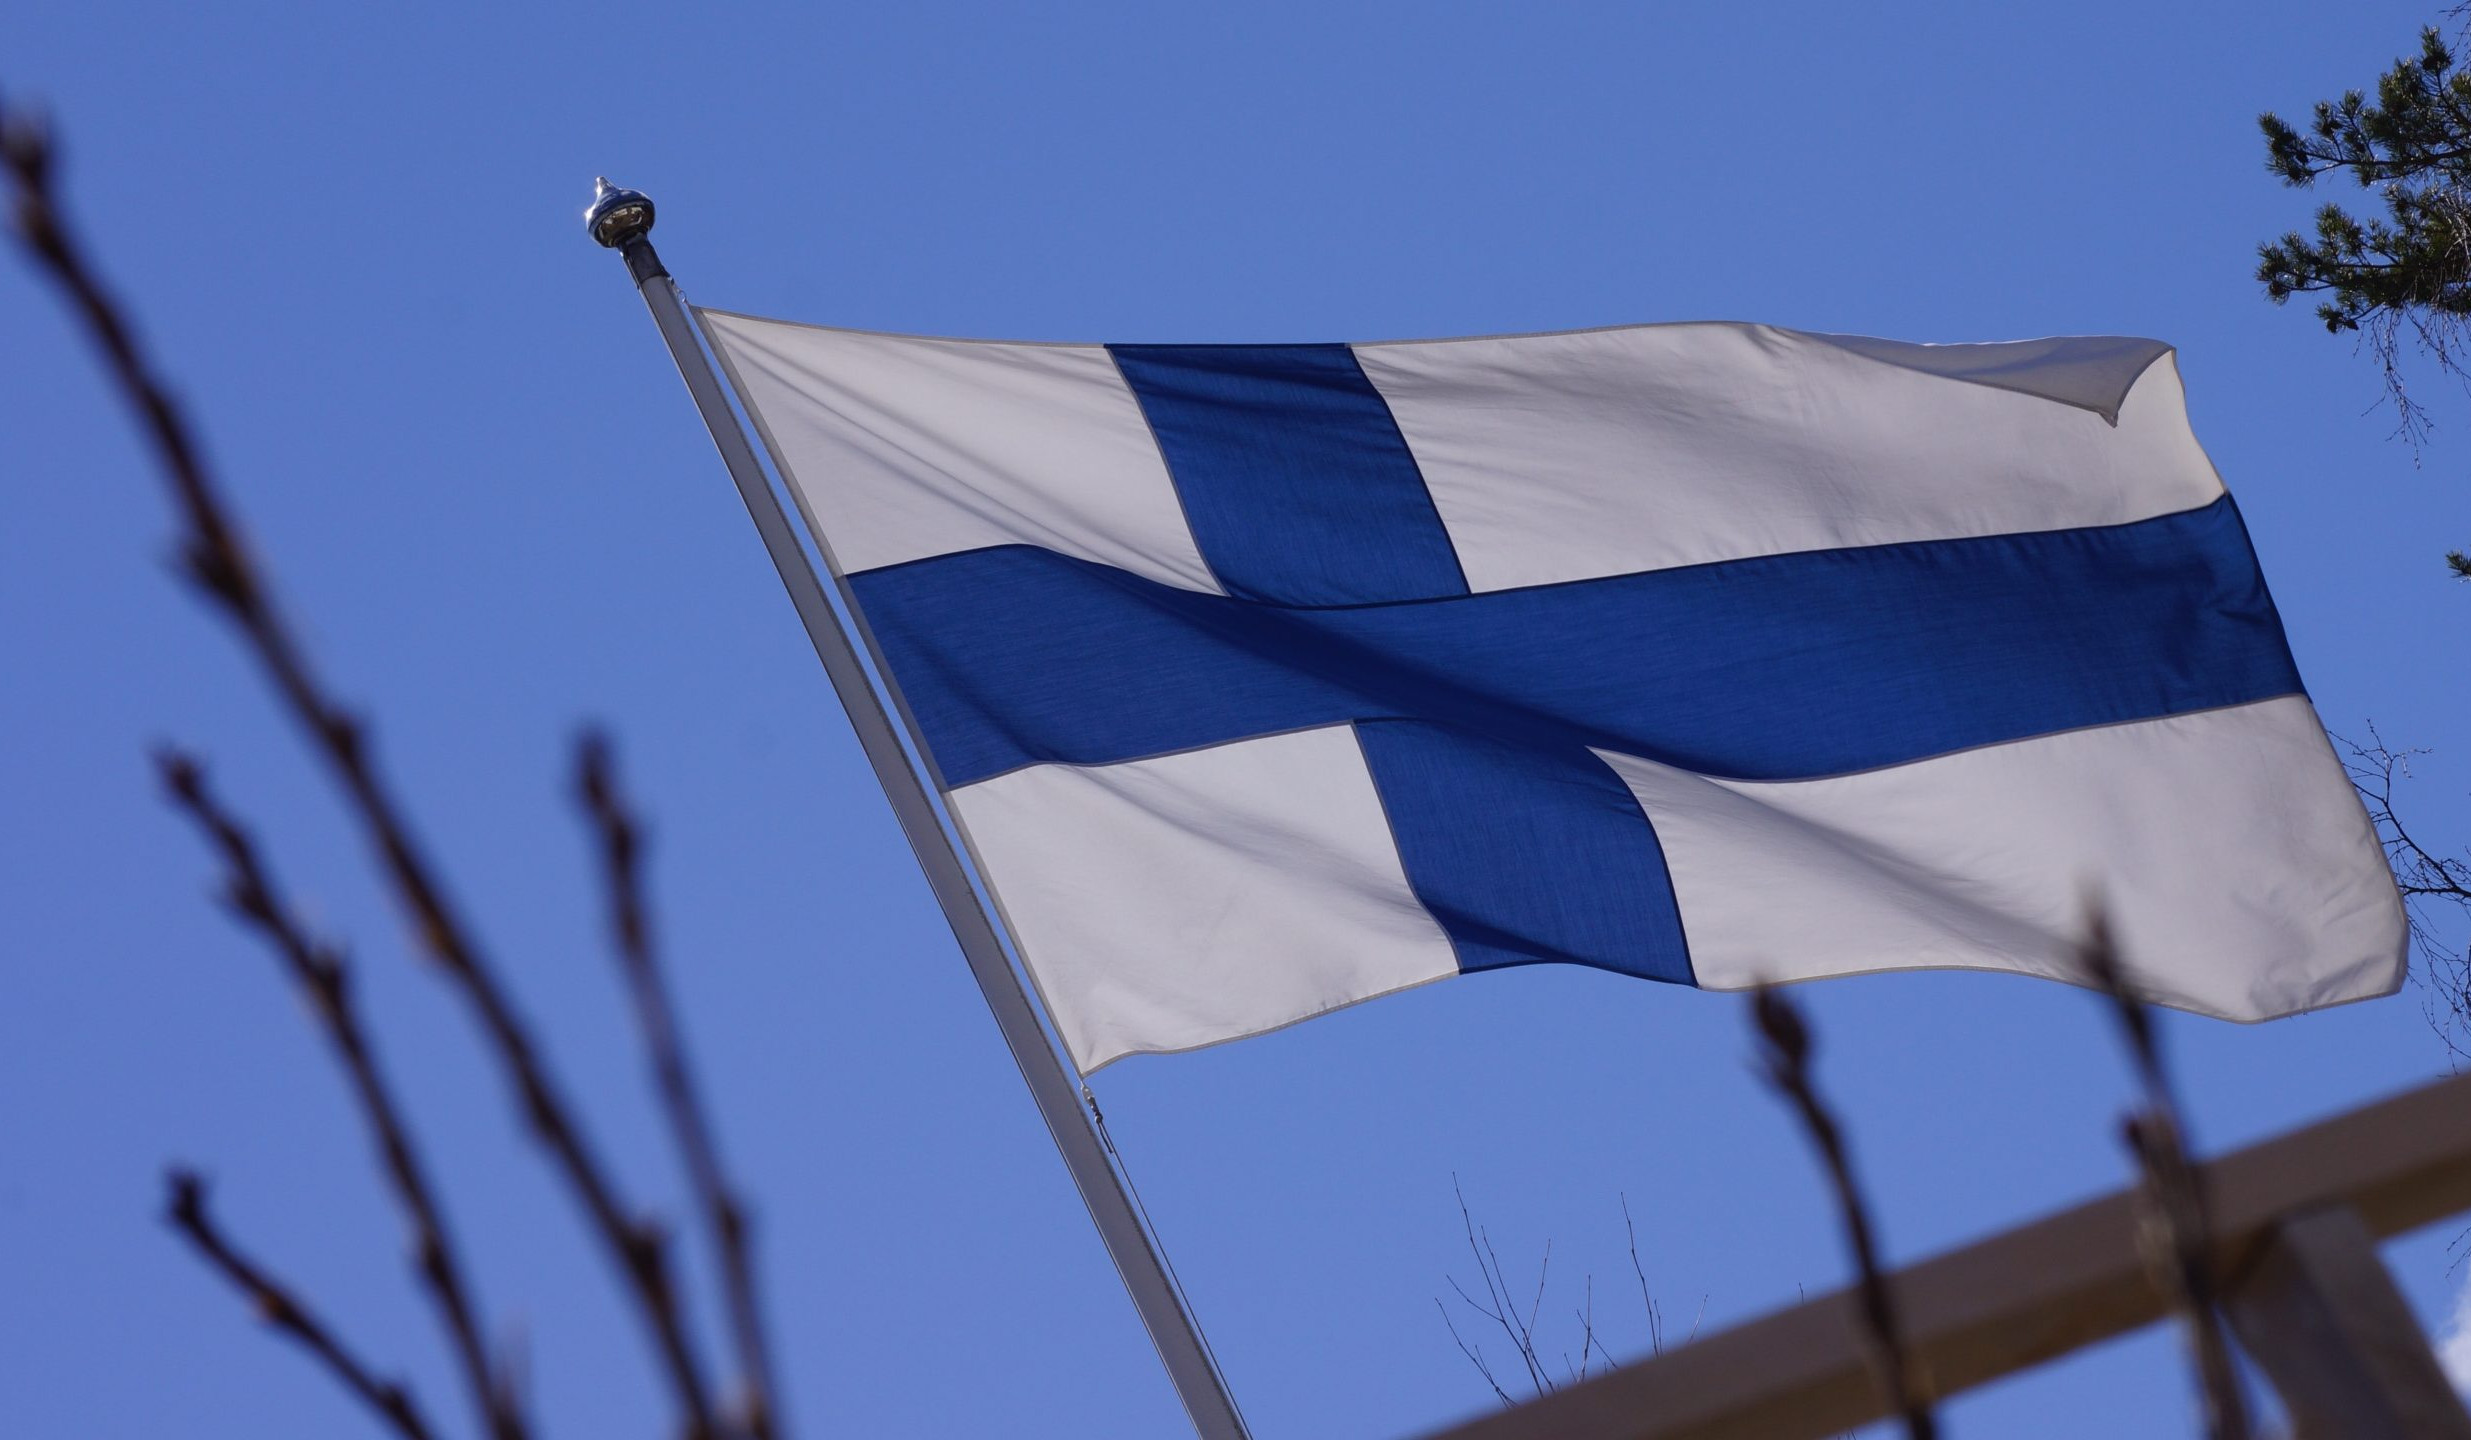 Ֆինլանդիայի խորհրդարանը հավանություն է տվել երկրի անդամակցությանը ՆԱՏՕ-ին